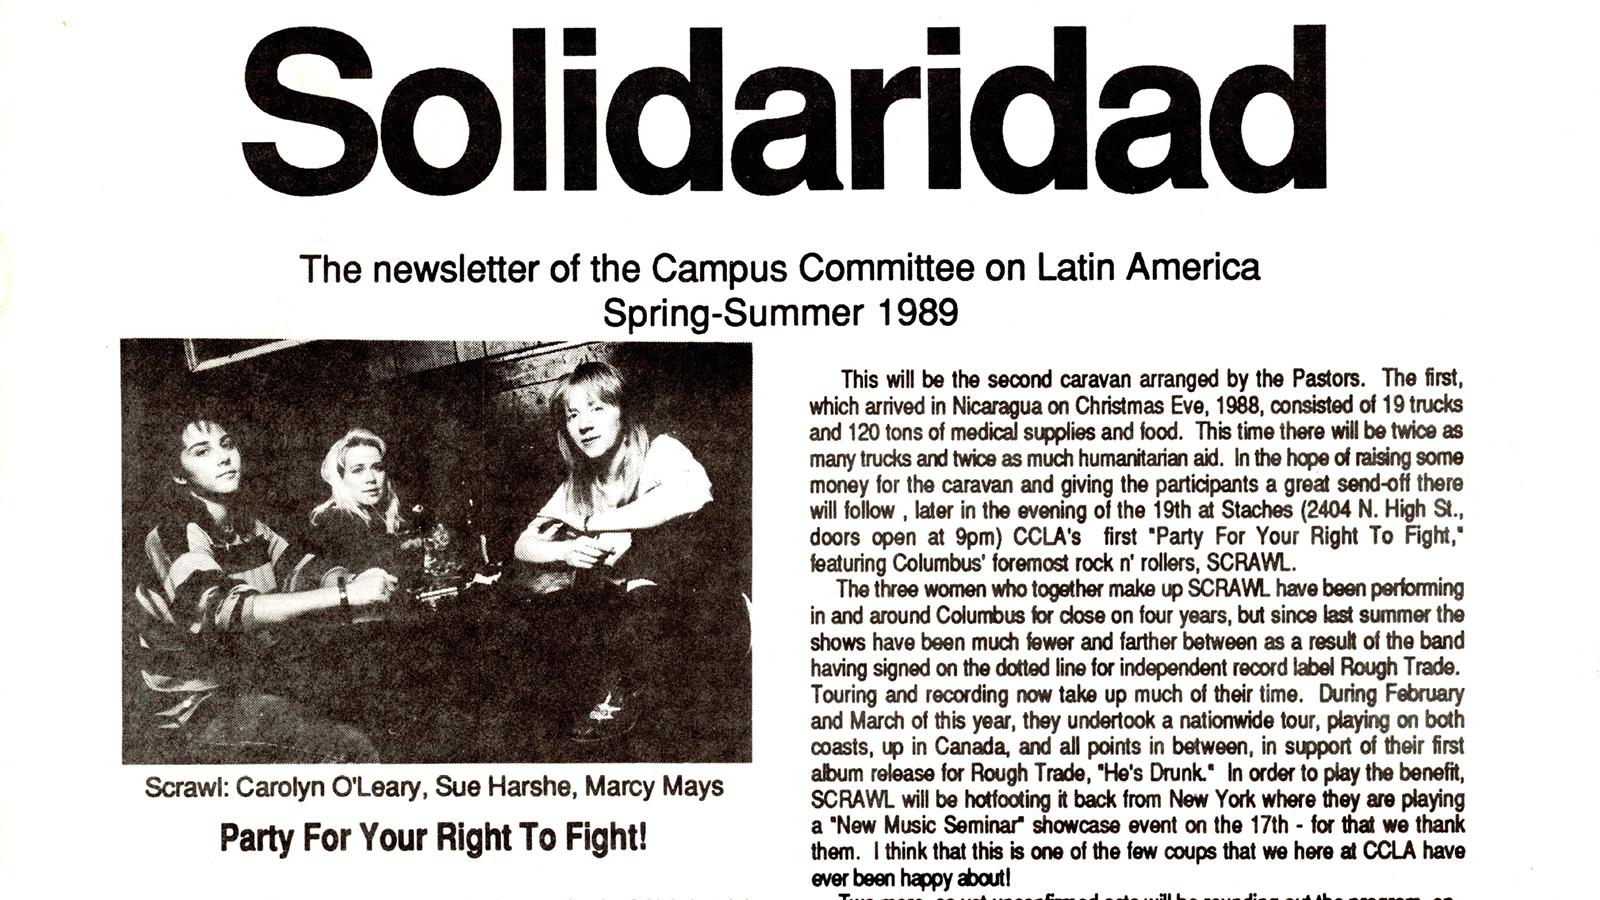 Solidaridad newsletter, Spring-Summer 1989